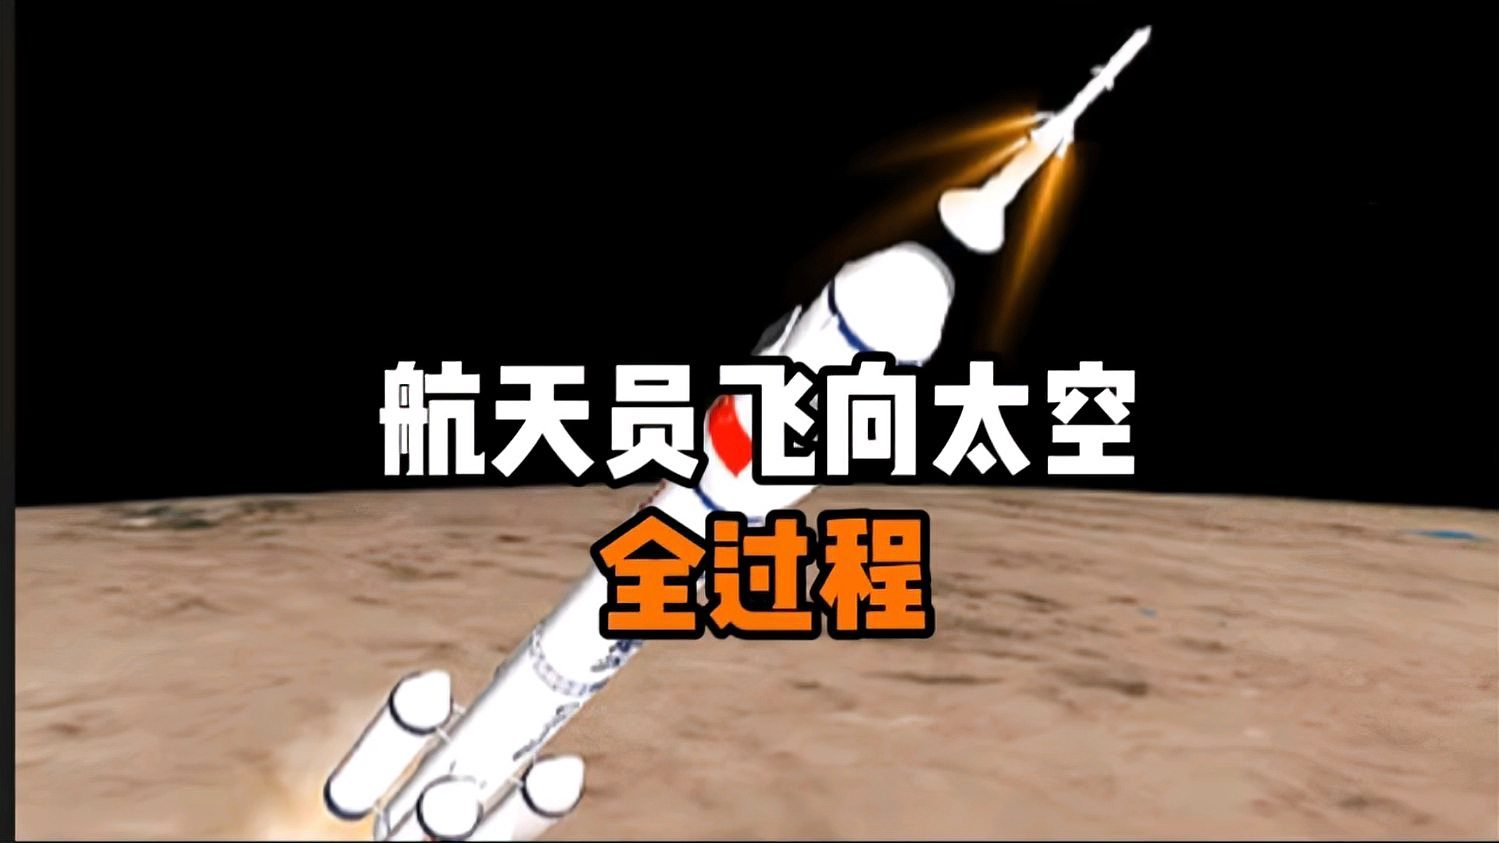 火箭模拟版手机游戏怎么玩_火箭游戏模拟手机版中文_火箭游戏模拟手机版